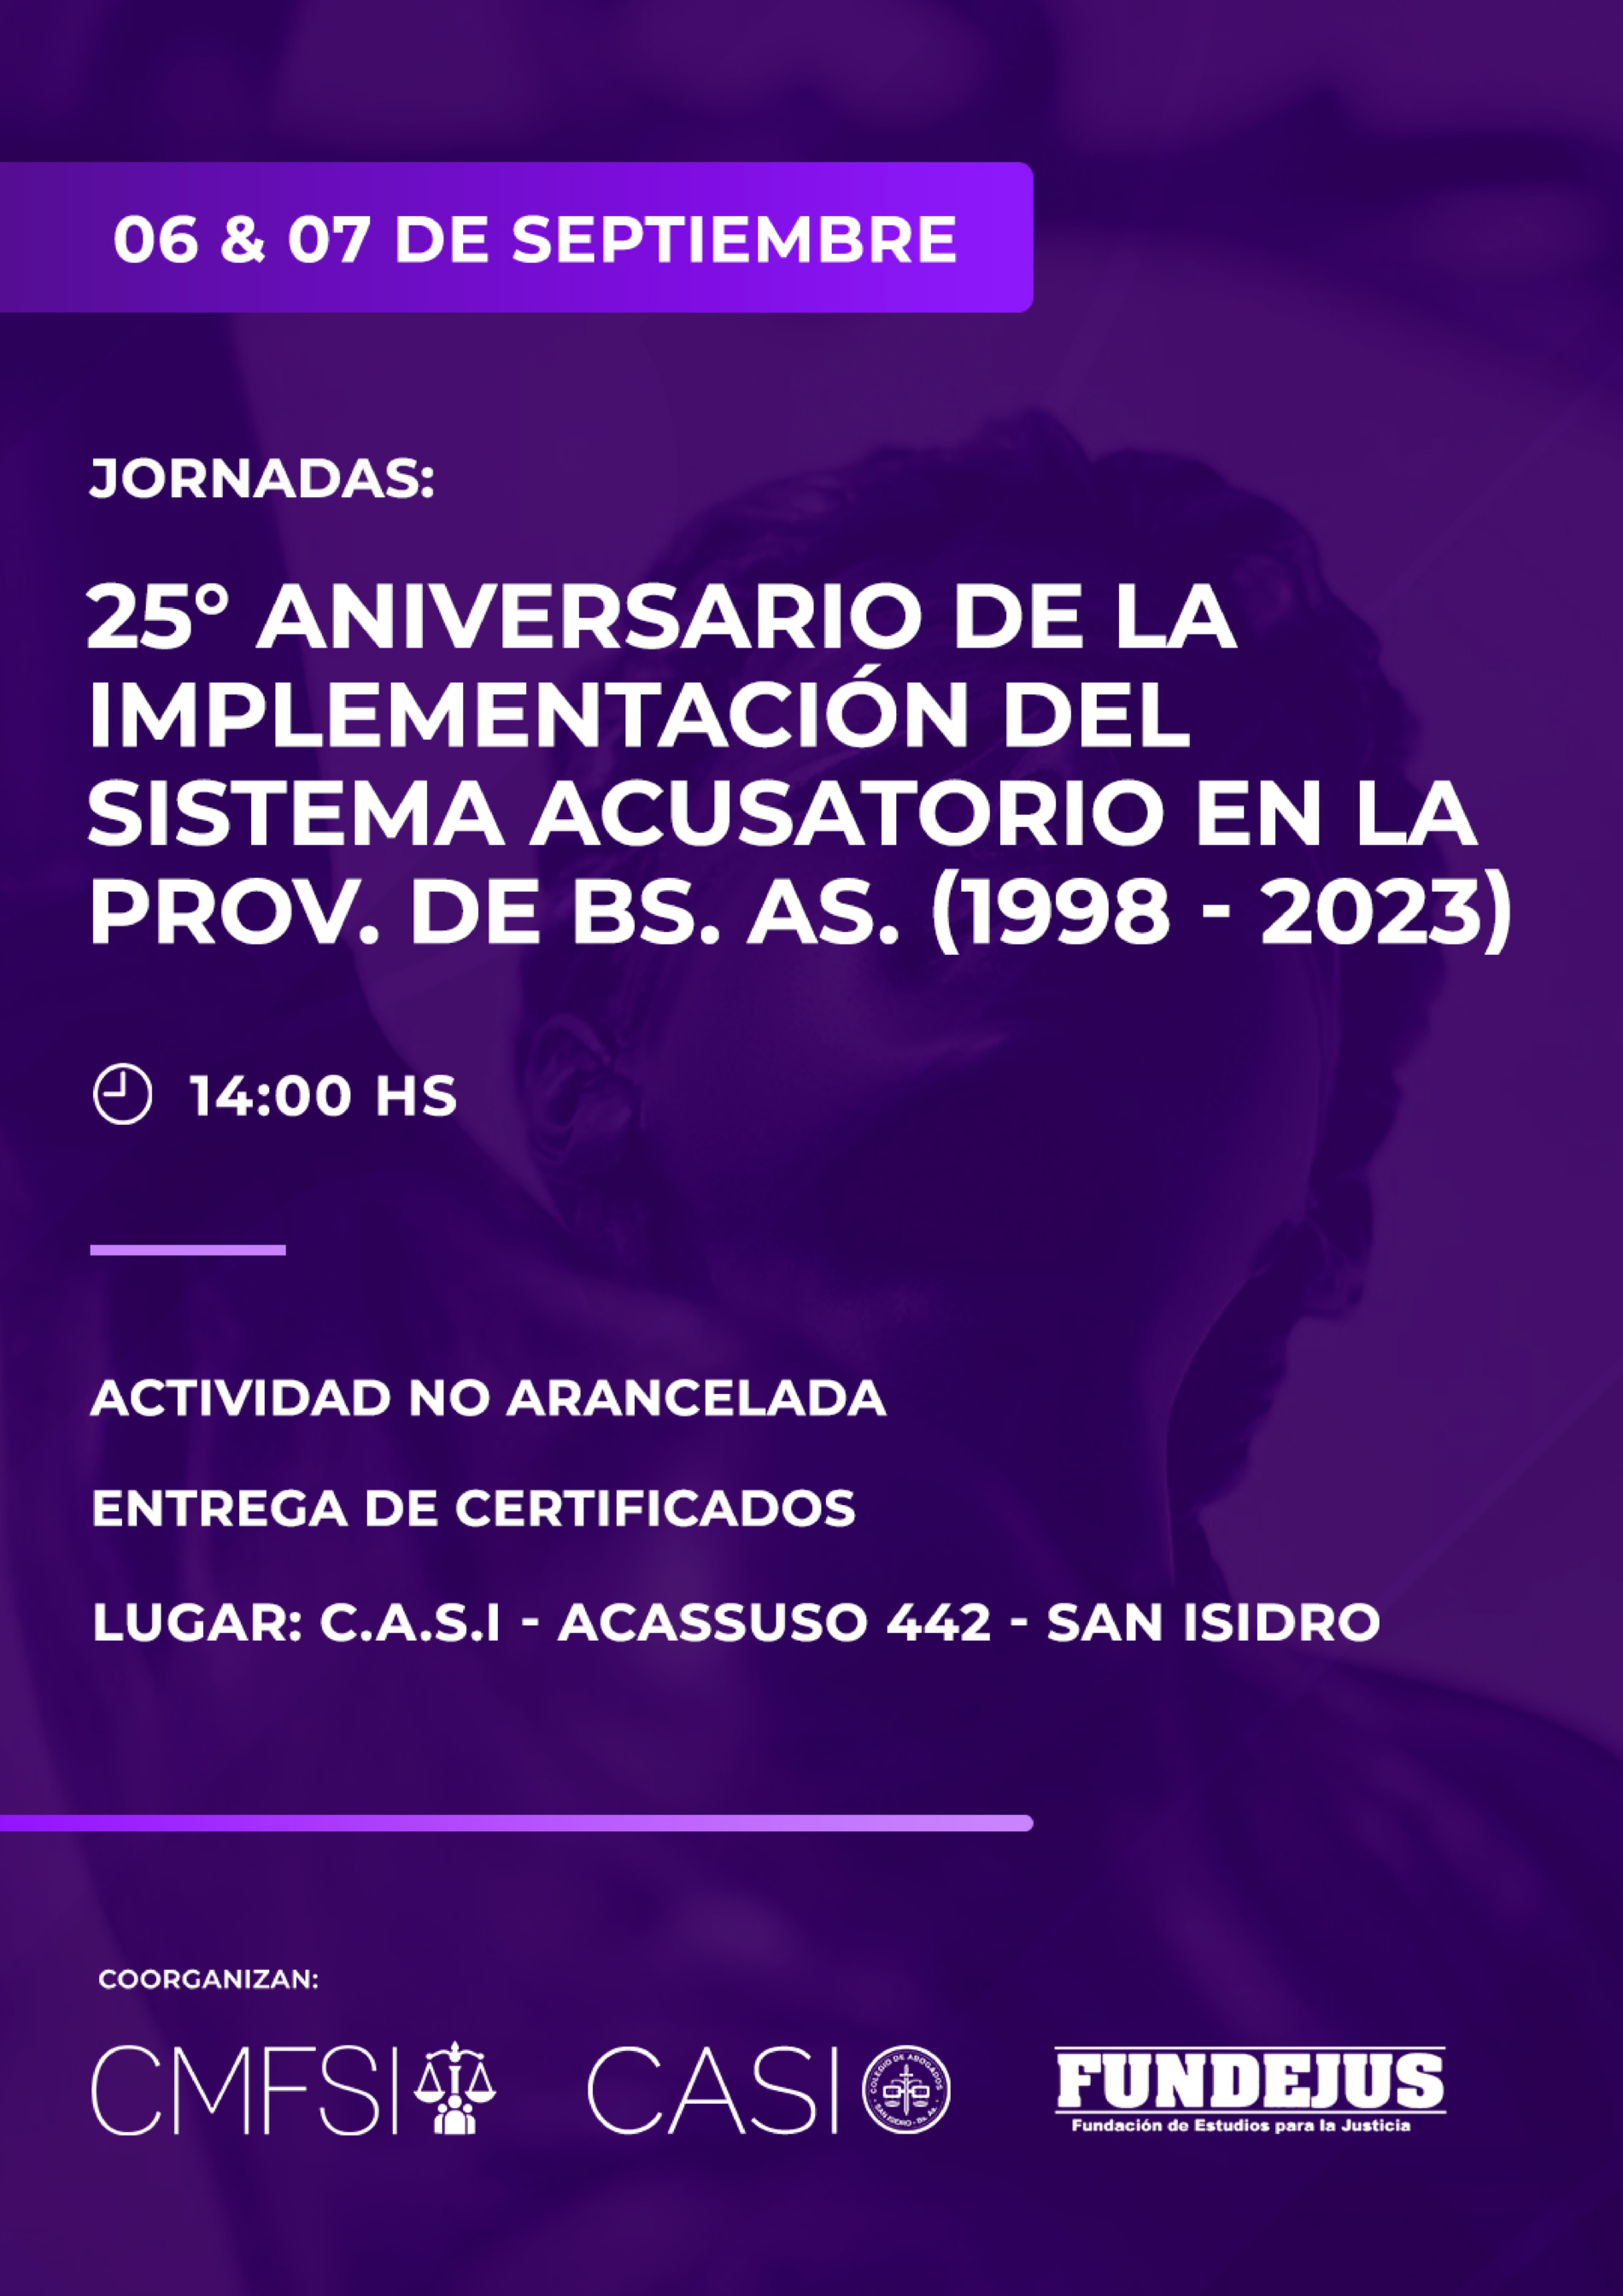 FUNDEJUS invita: Jornadas “25º Aniversario de la implementación del sistema acusatorio en la provincia de Buenos Aires”. (1998-2023)